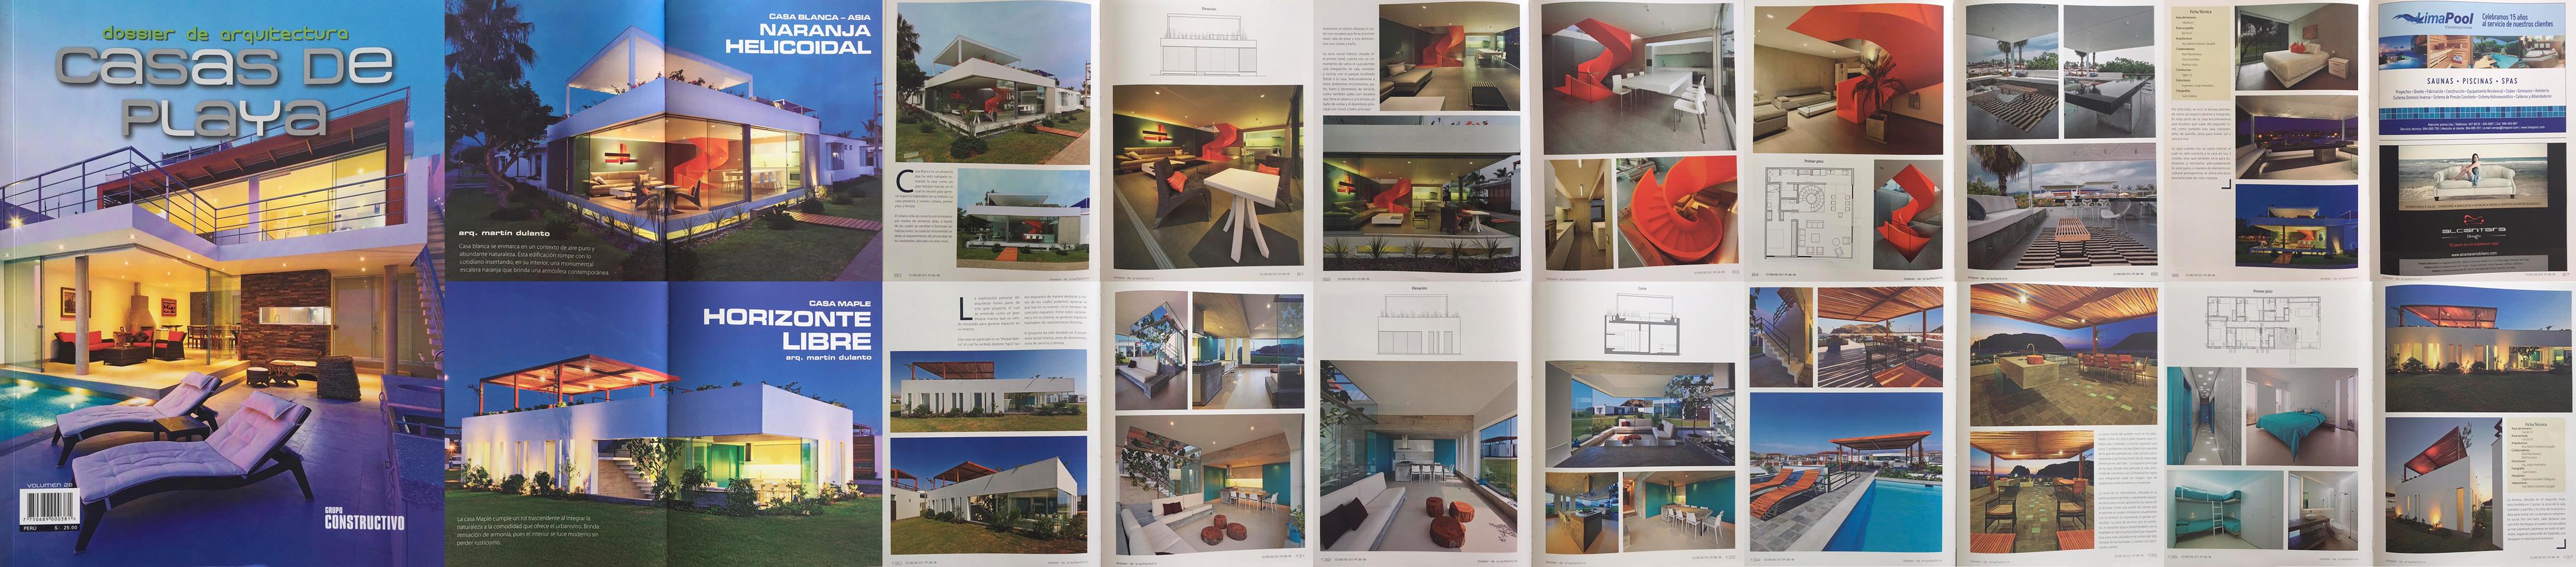 Casa Blanca y Casa Maple en revista “Dossier de Arquitectura” volumen 28 diciembre 2015